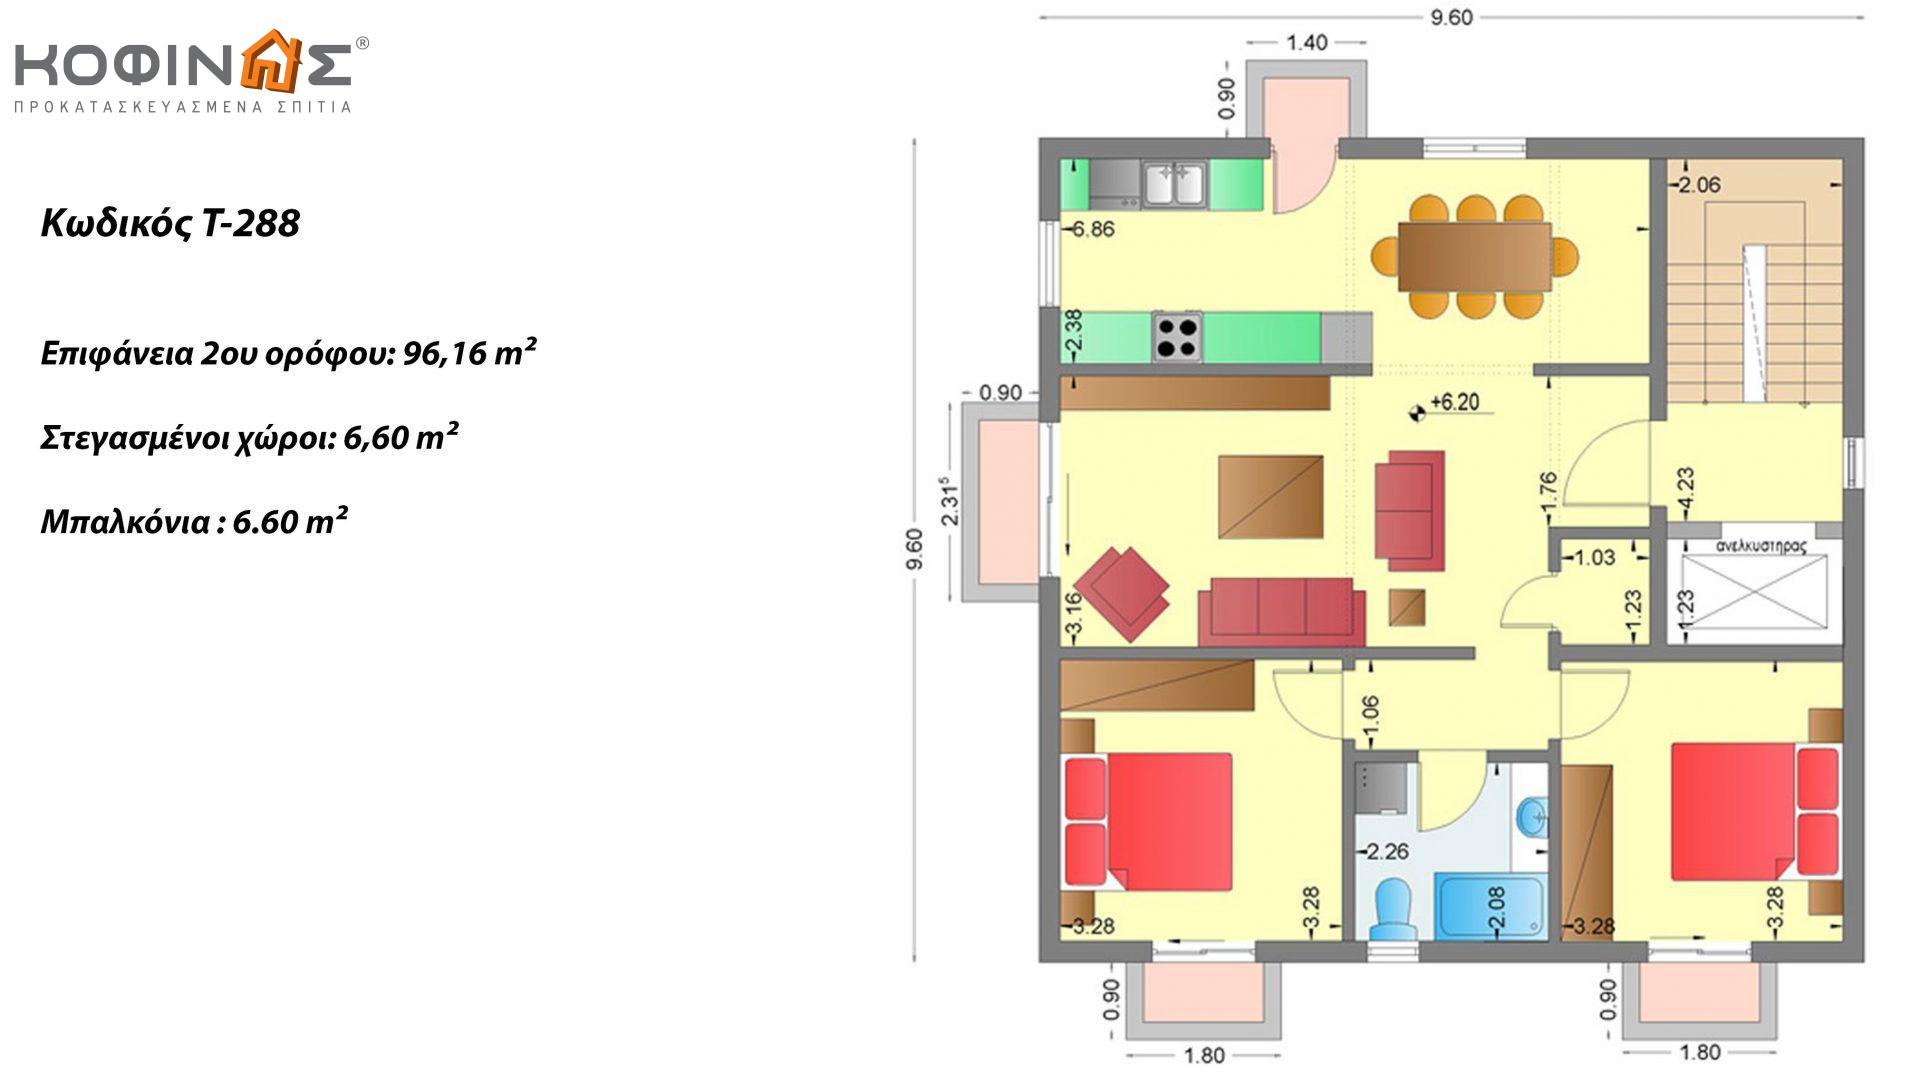 Τριώροφη Κατοικία T-288, συνολικής επιφάνειας 288,48 τ.μ. ,συνολική επιφάνεια στεγασμένων χώρων 13.20 τ.μ., μπαλκόνια 13,20τ.μ.